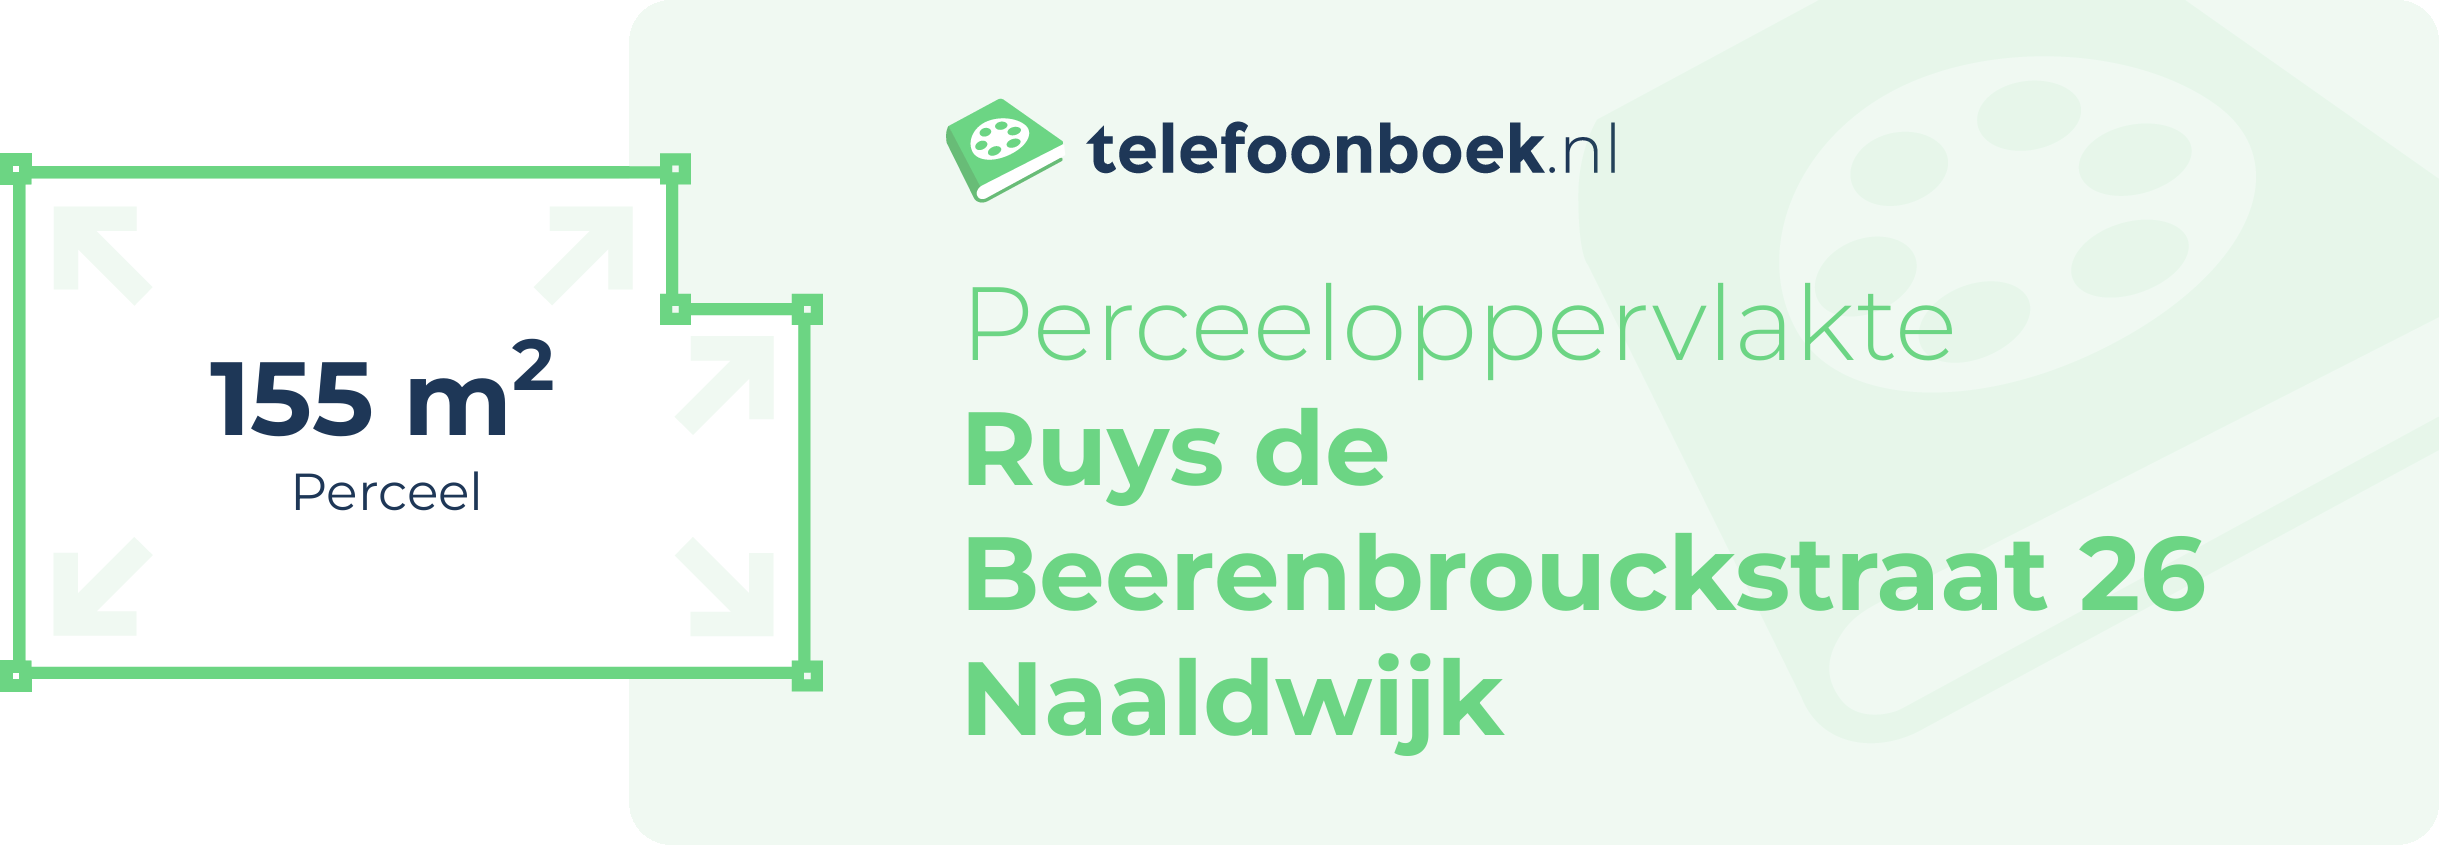 Perceeloppervlakte Ruys De Beerenbrouckstraat 26 Naaldwijk